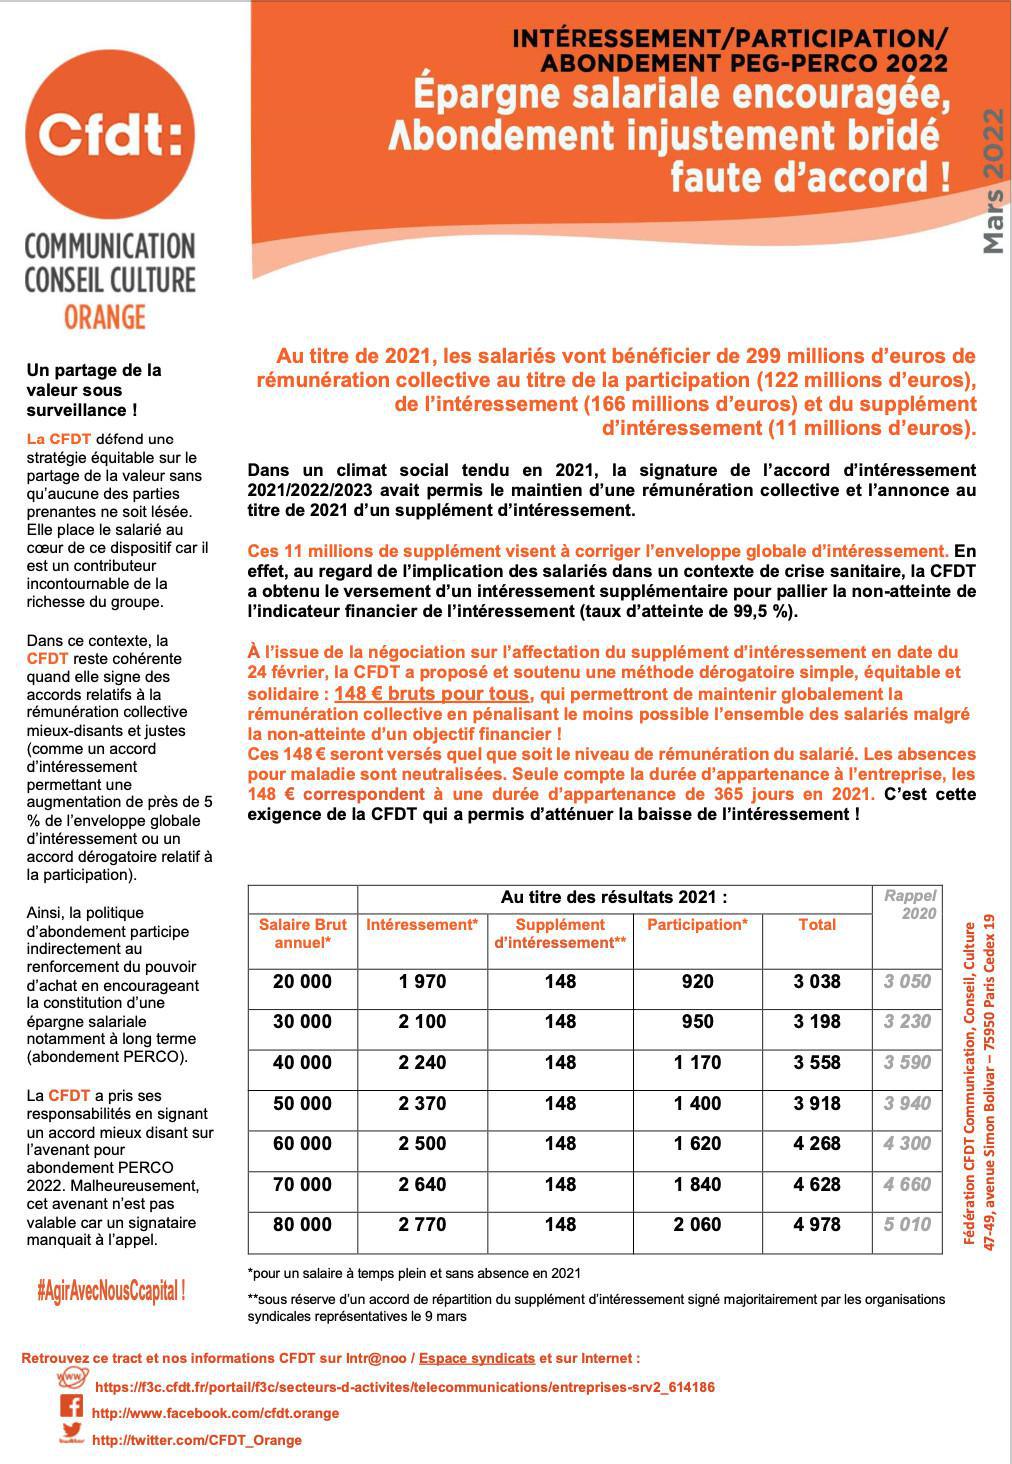 Intéressement/Participation/Abondement PEG-PERCO 2022